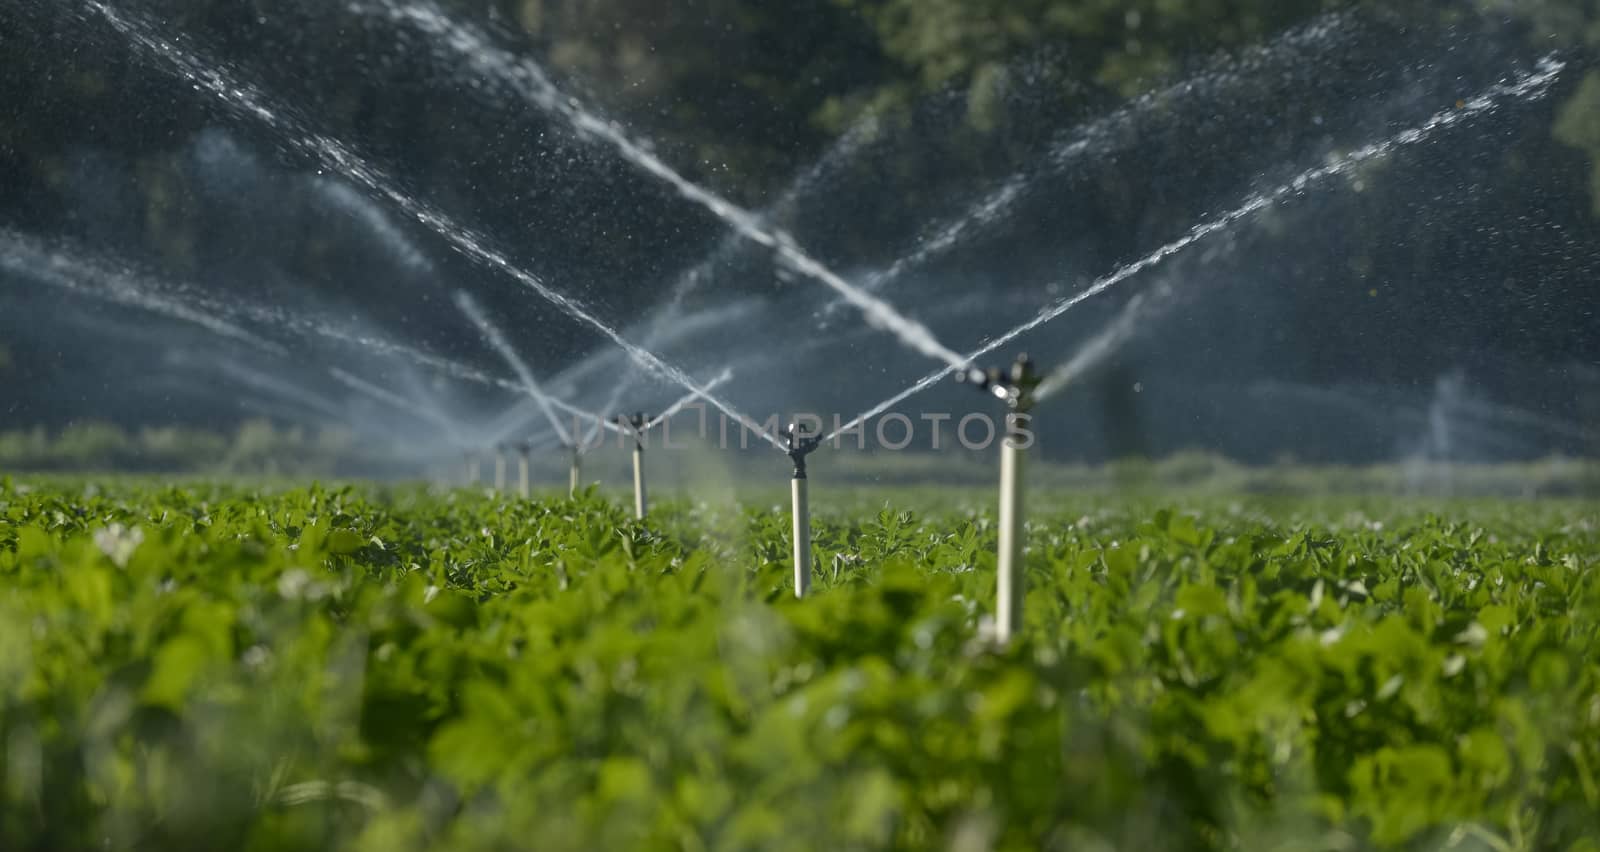 Water sprinklers irrigating a field. by itsajoop